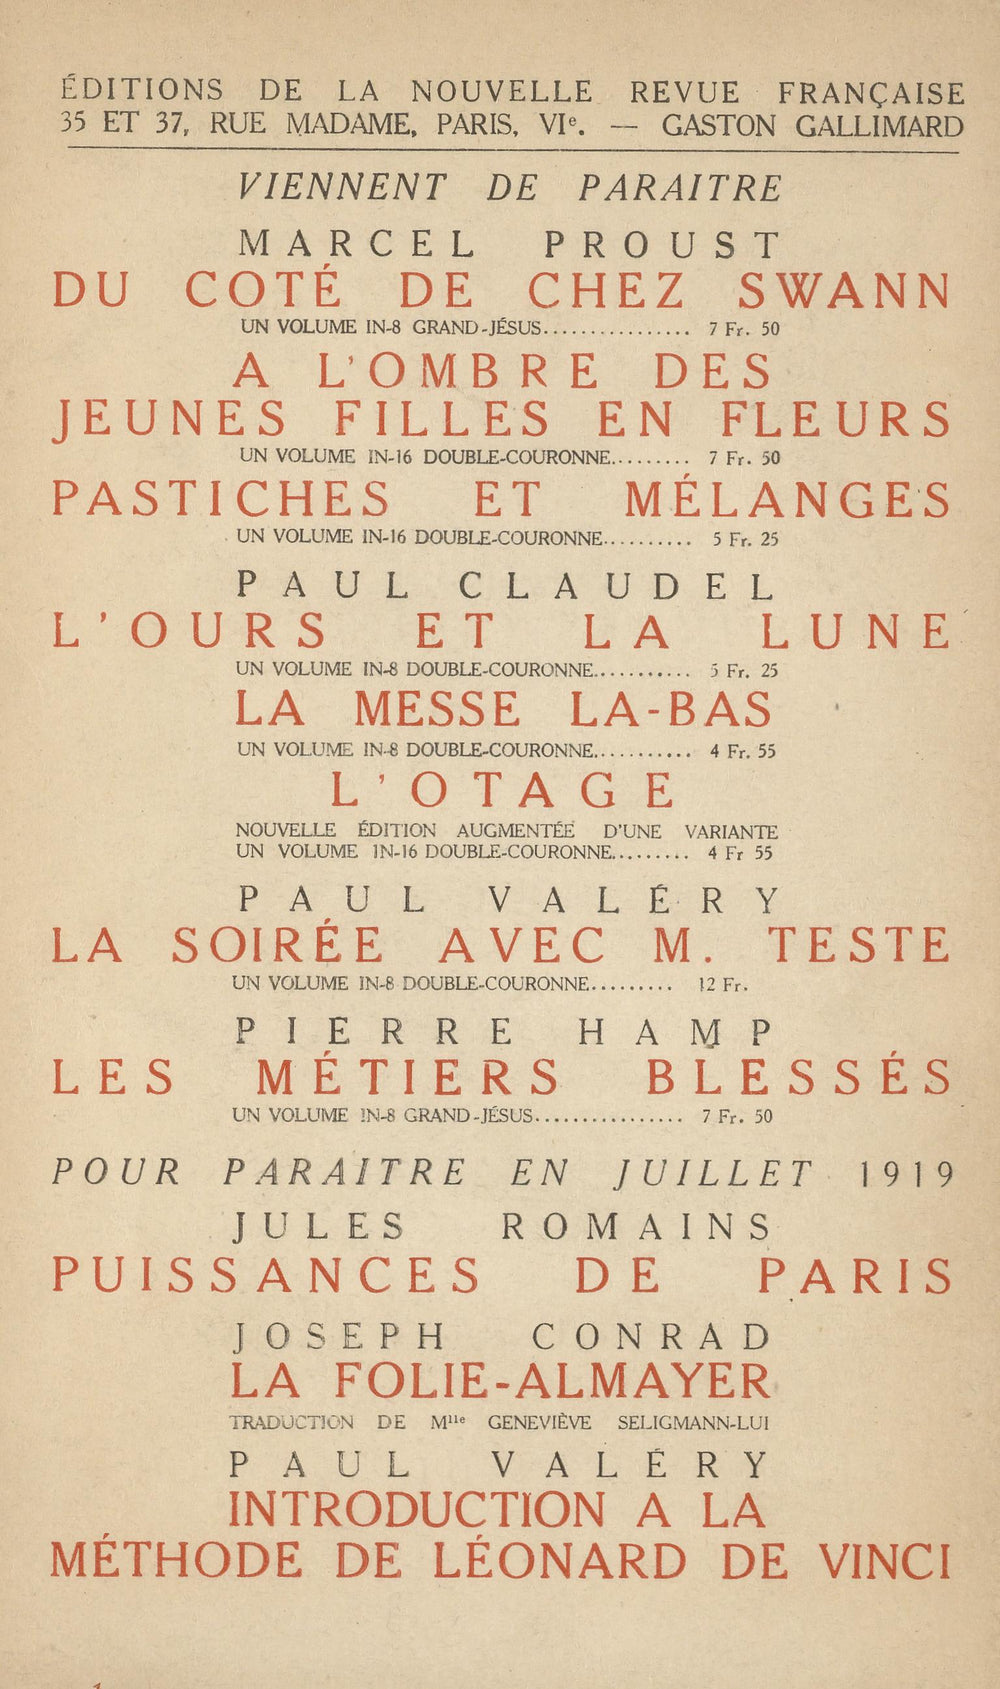 La Nouvelle Revue Française N' 70 (Juillet 1919)